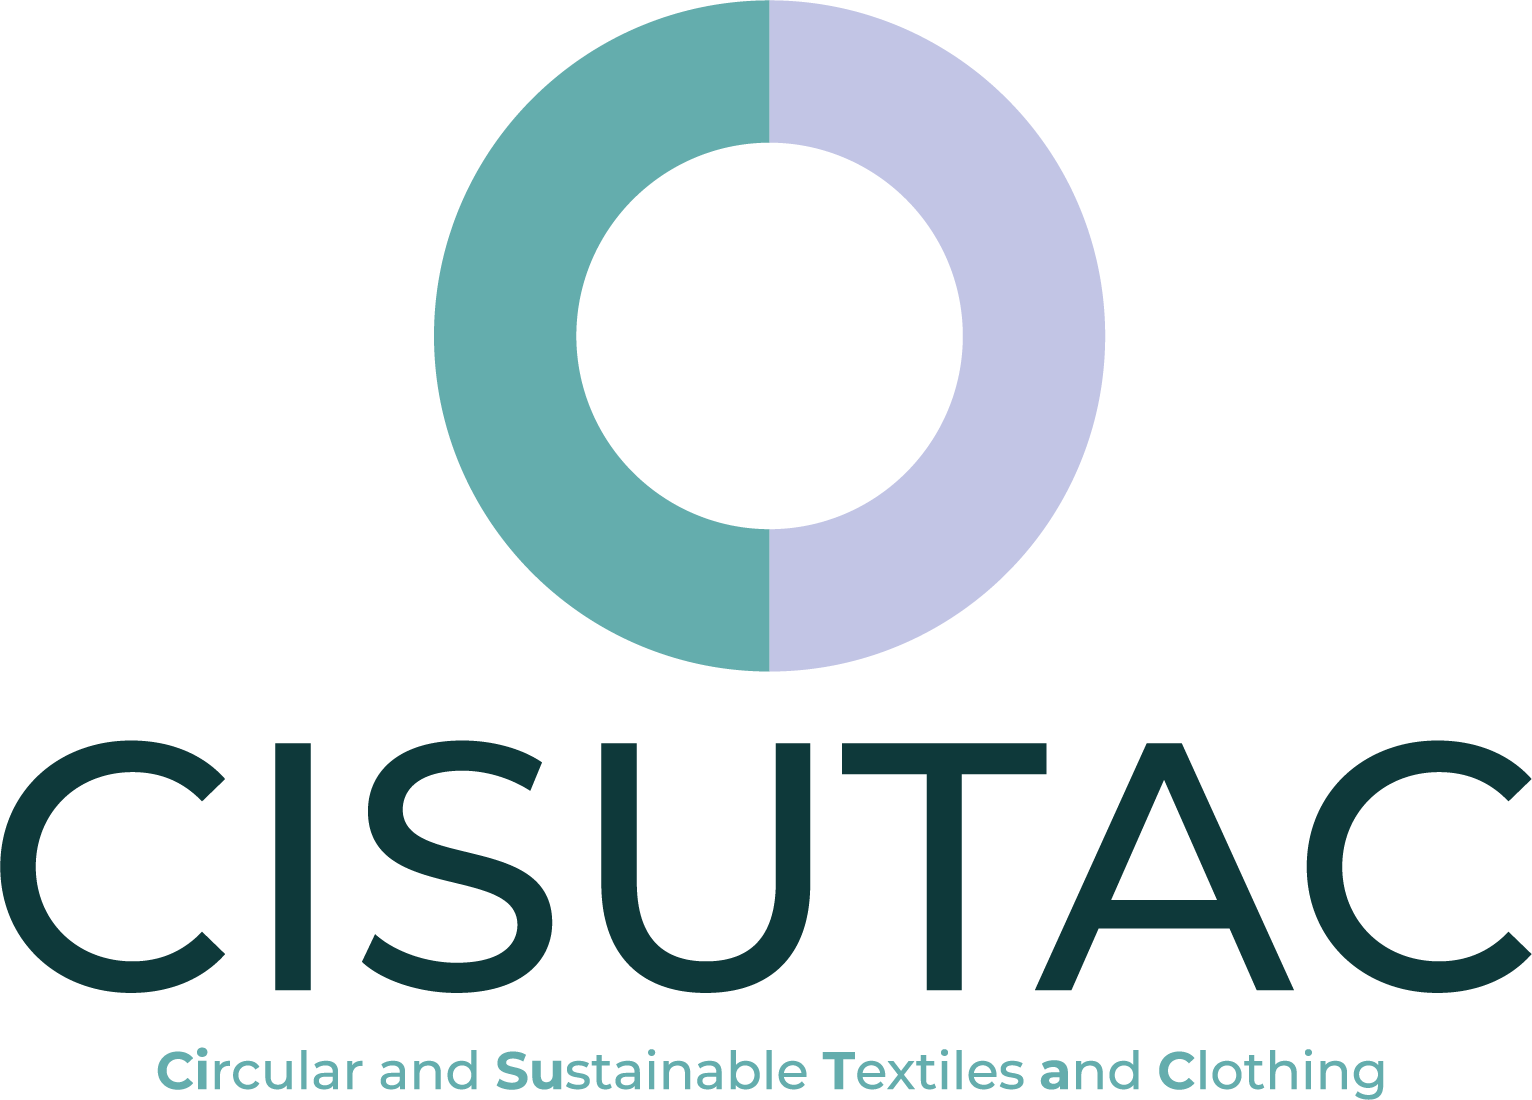 CISUTAC logo colours